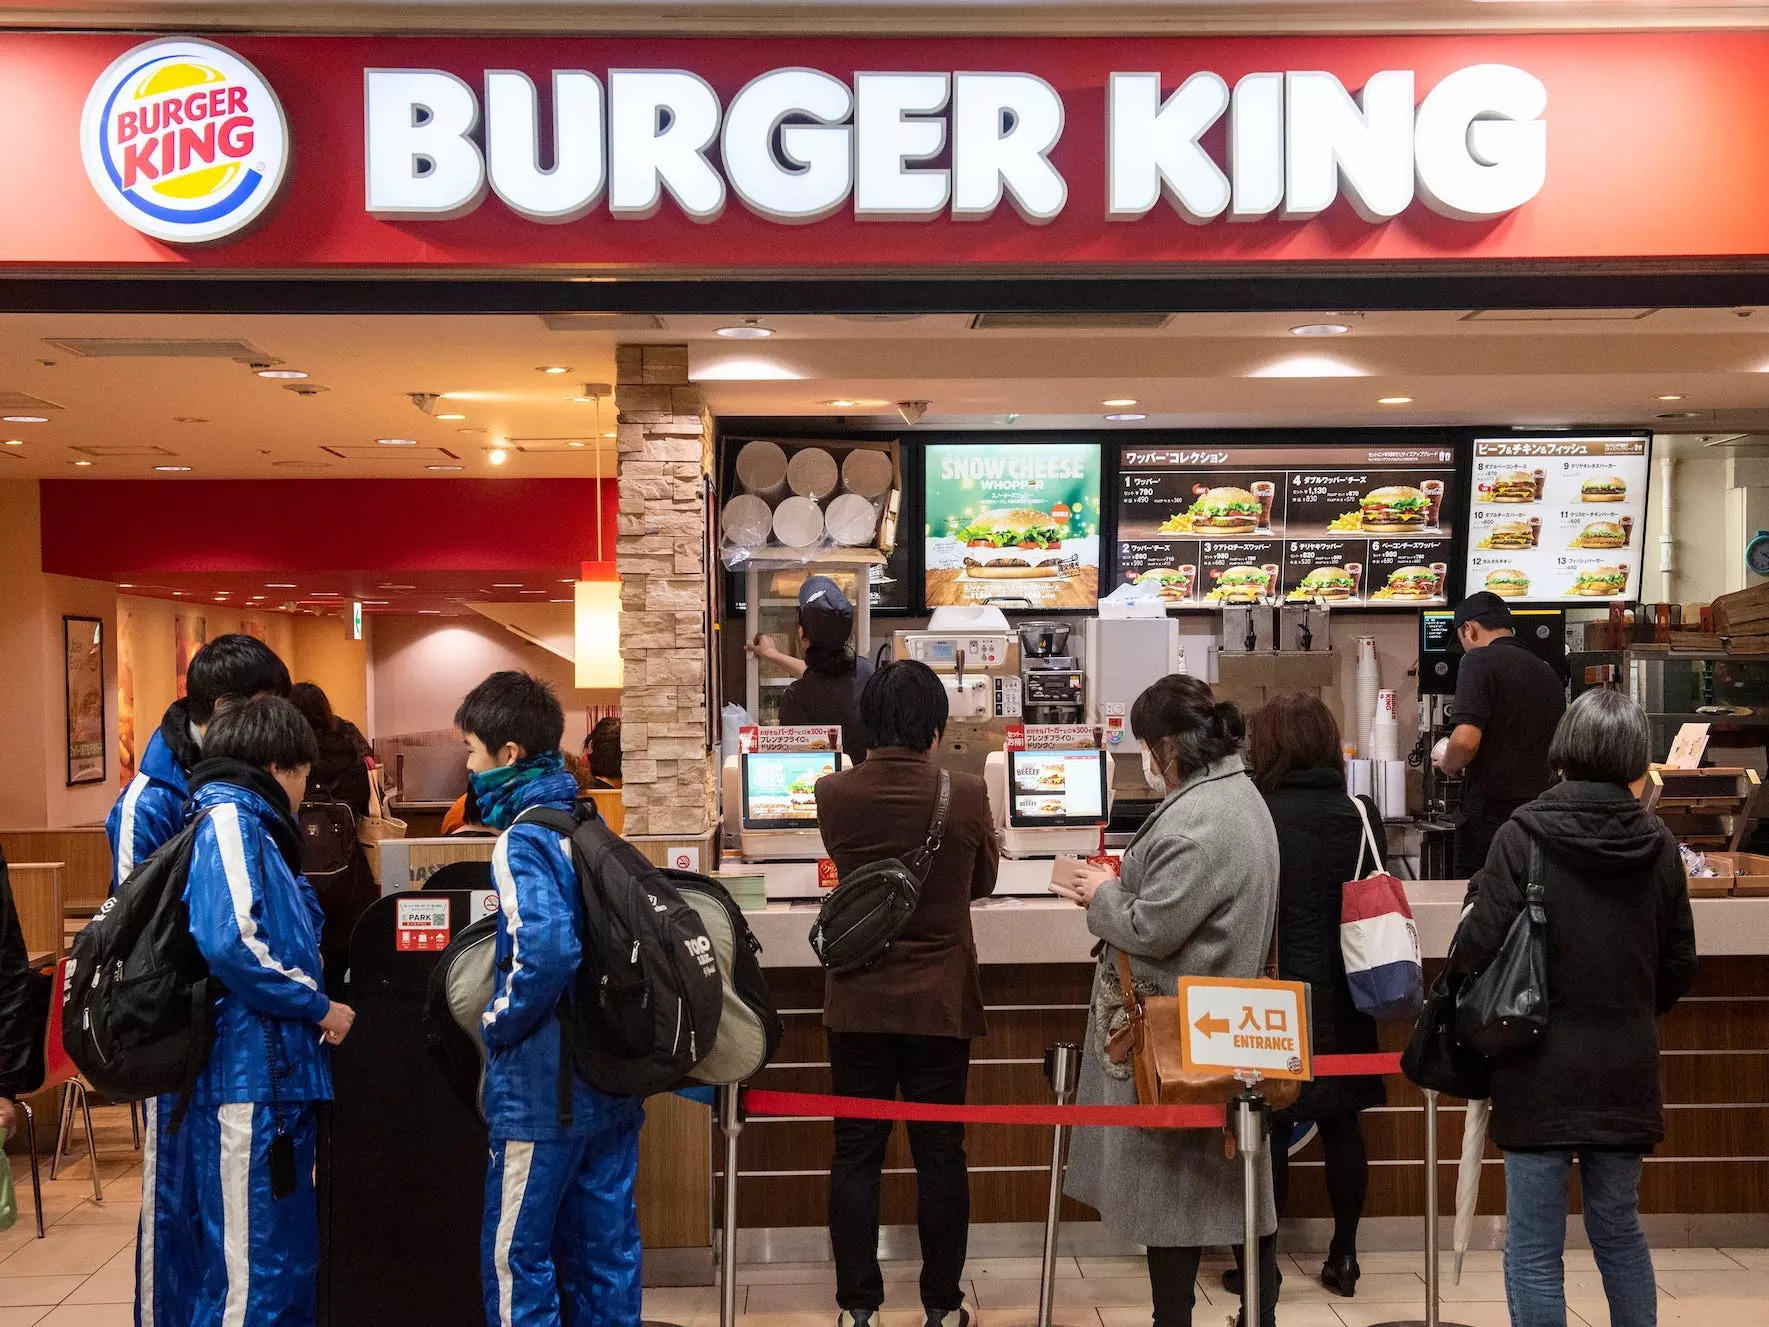 Les restaurants Burger King au Japon vendent un repas « semi-frites », remplaçant les frites par des nouilles ramen croustillantes au milieu d’une pénurie de pommes de terre.